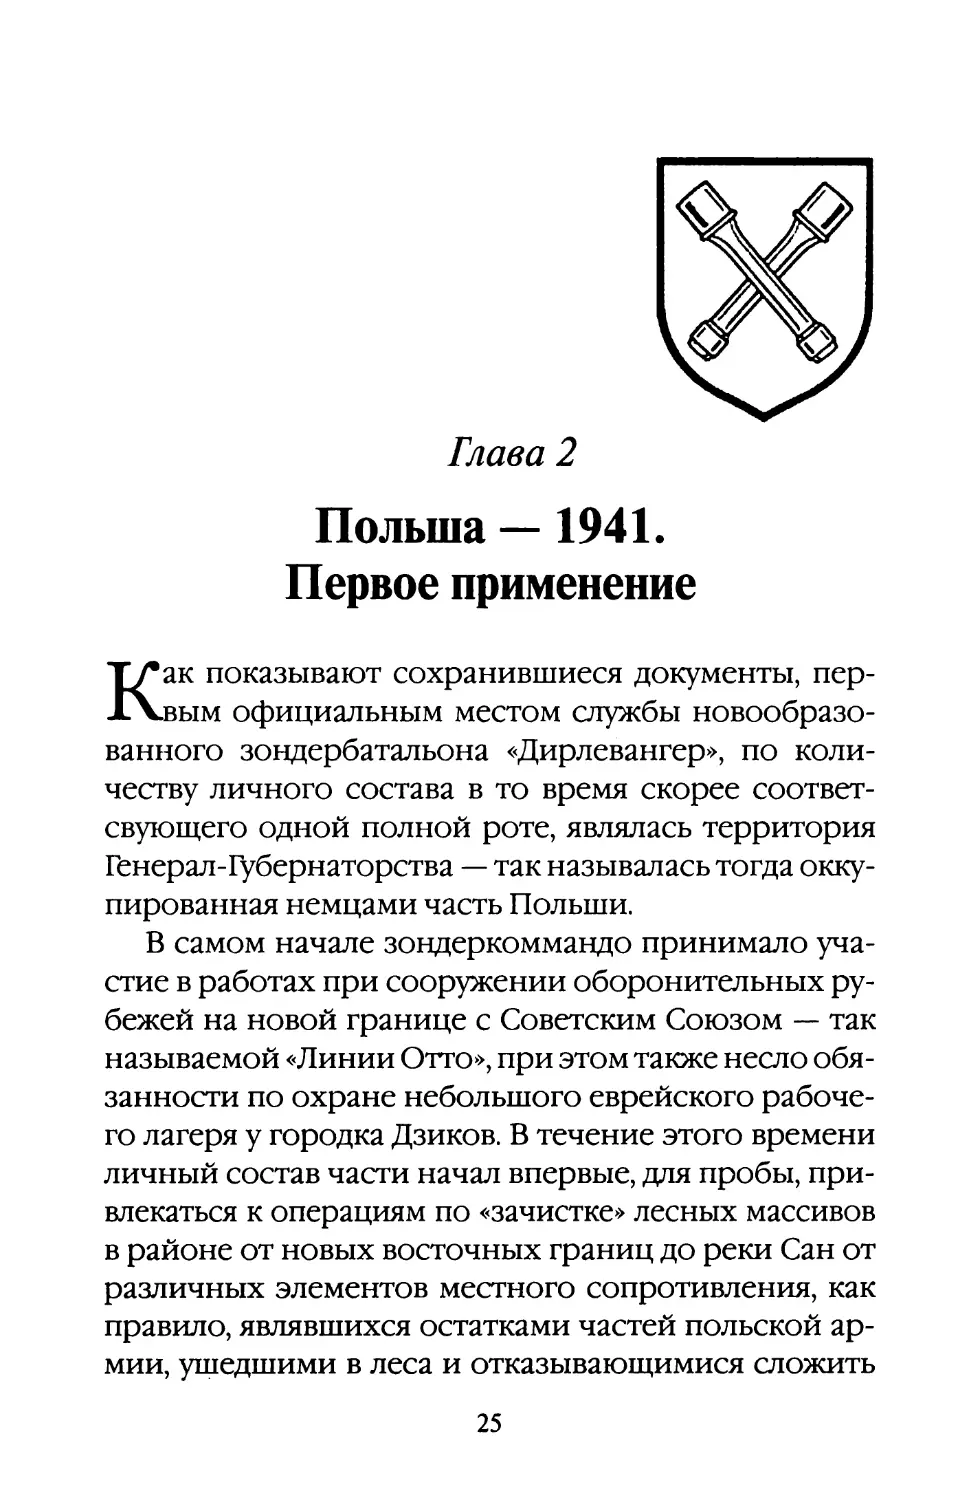 Глава 2. Польша — 1941. Первое применение